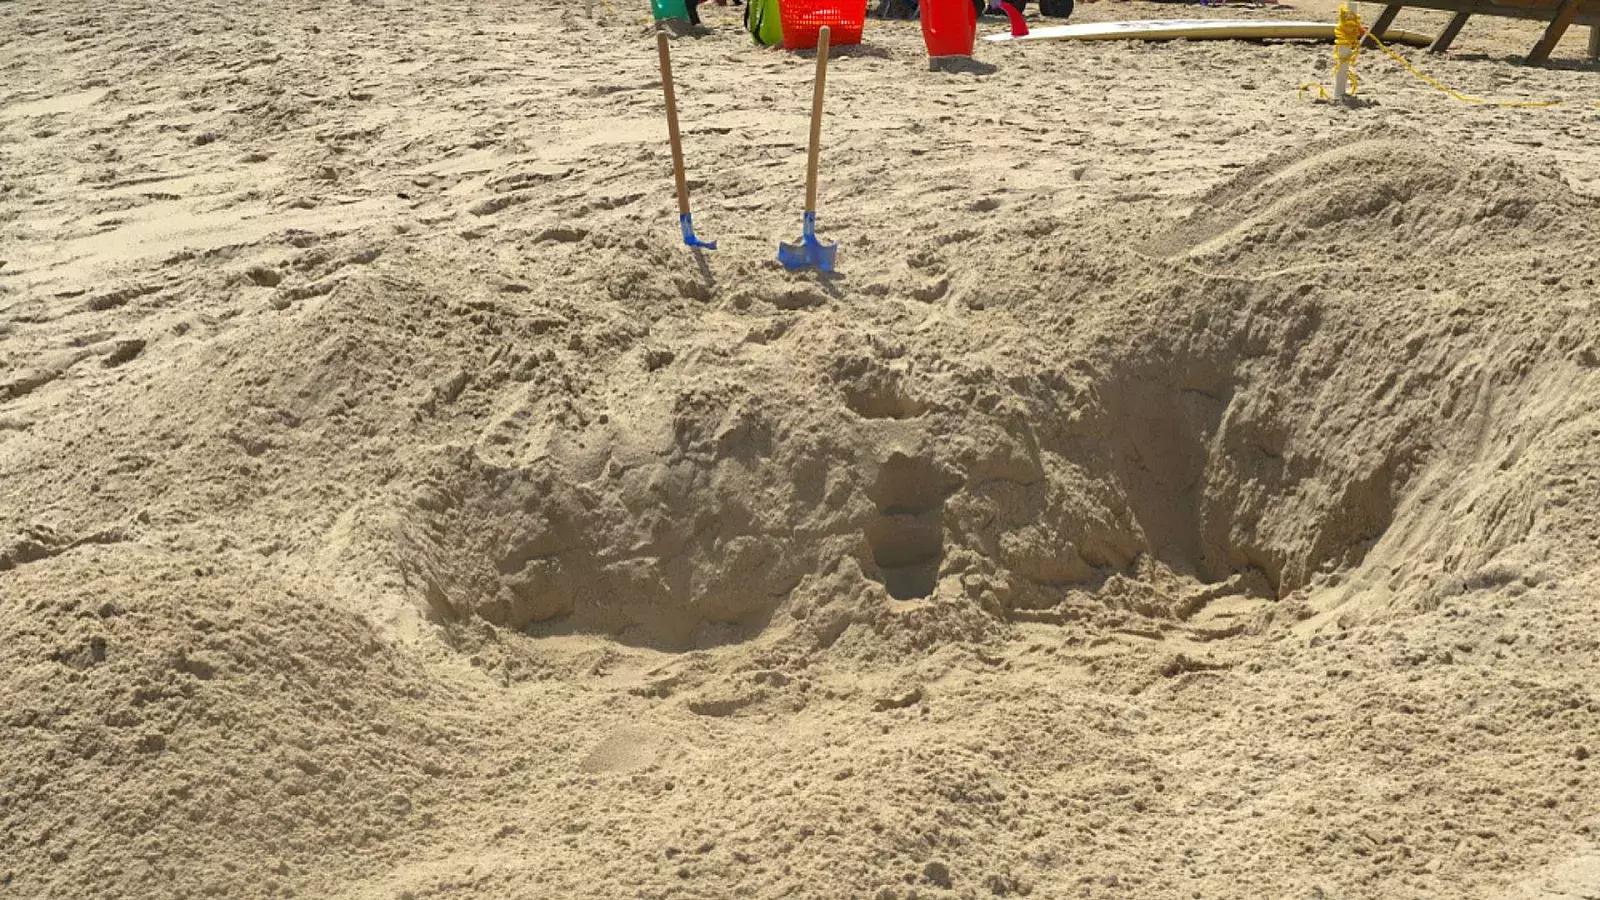 Autoridades discuten nuevas medidas después de que una niña muriera enterrada en arena de playa de Florida